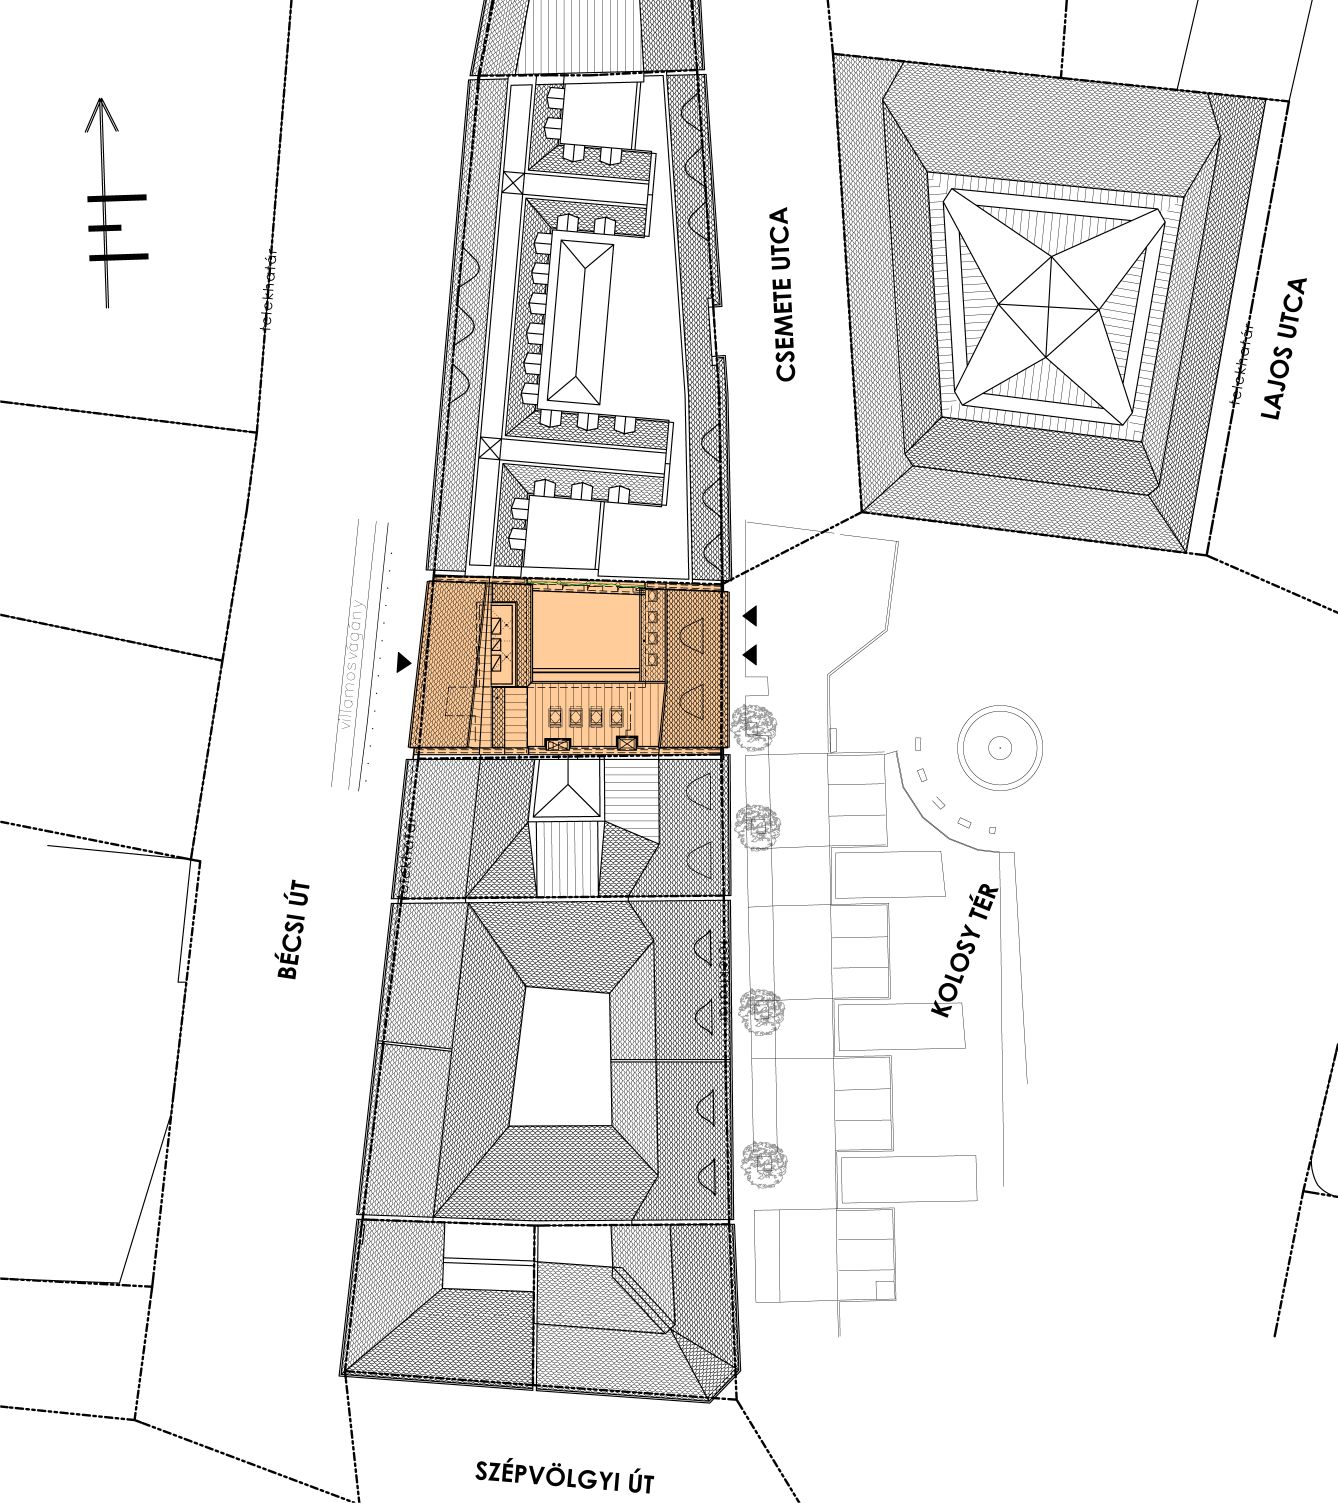 helyszínrajz a tervezéssel érintett épületről, amely Óbuda Újlak nevű városrészén belül helyezkedik el